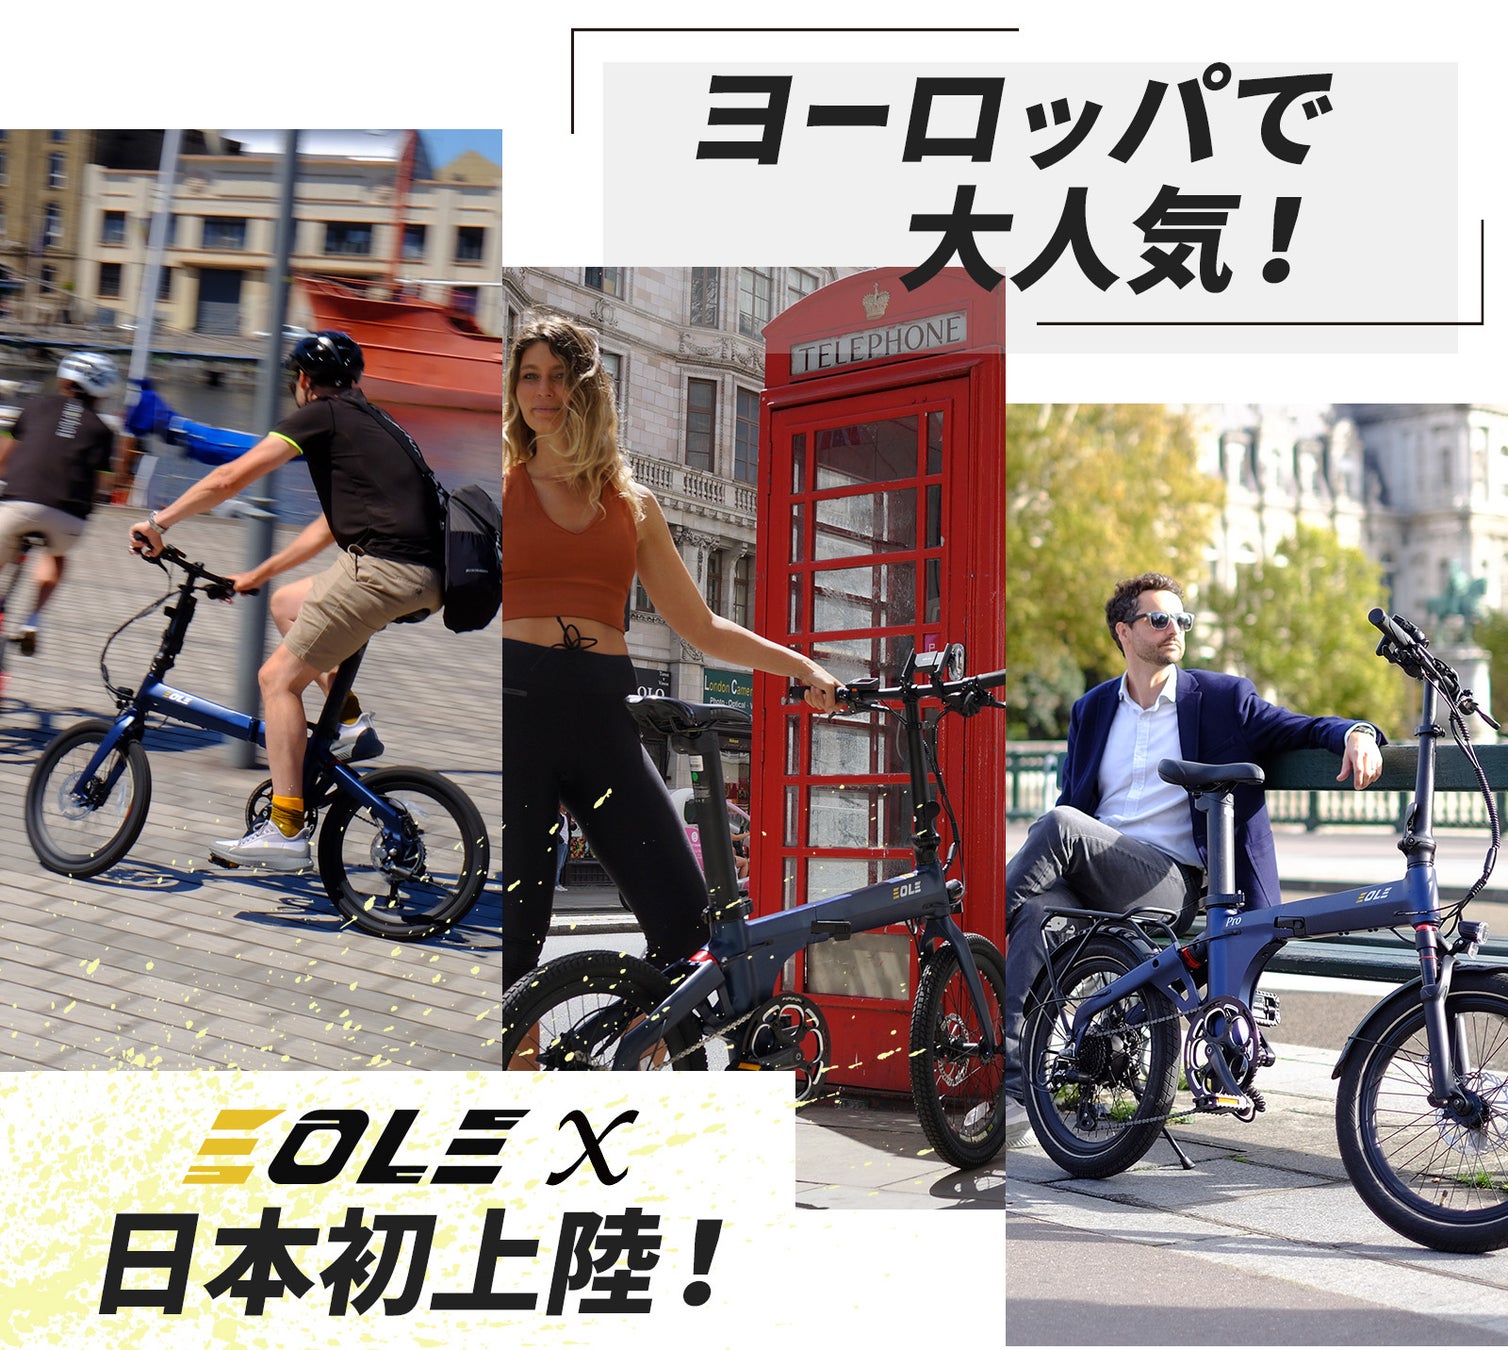 今ヨーロッパで話題の美しいデザインと高性能を兼ね備えた、近未来型折り畳み電動自転車！「Morfuns EOLE X」が応援購入サイトMakuakeにて日本初登場のサブ画像3